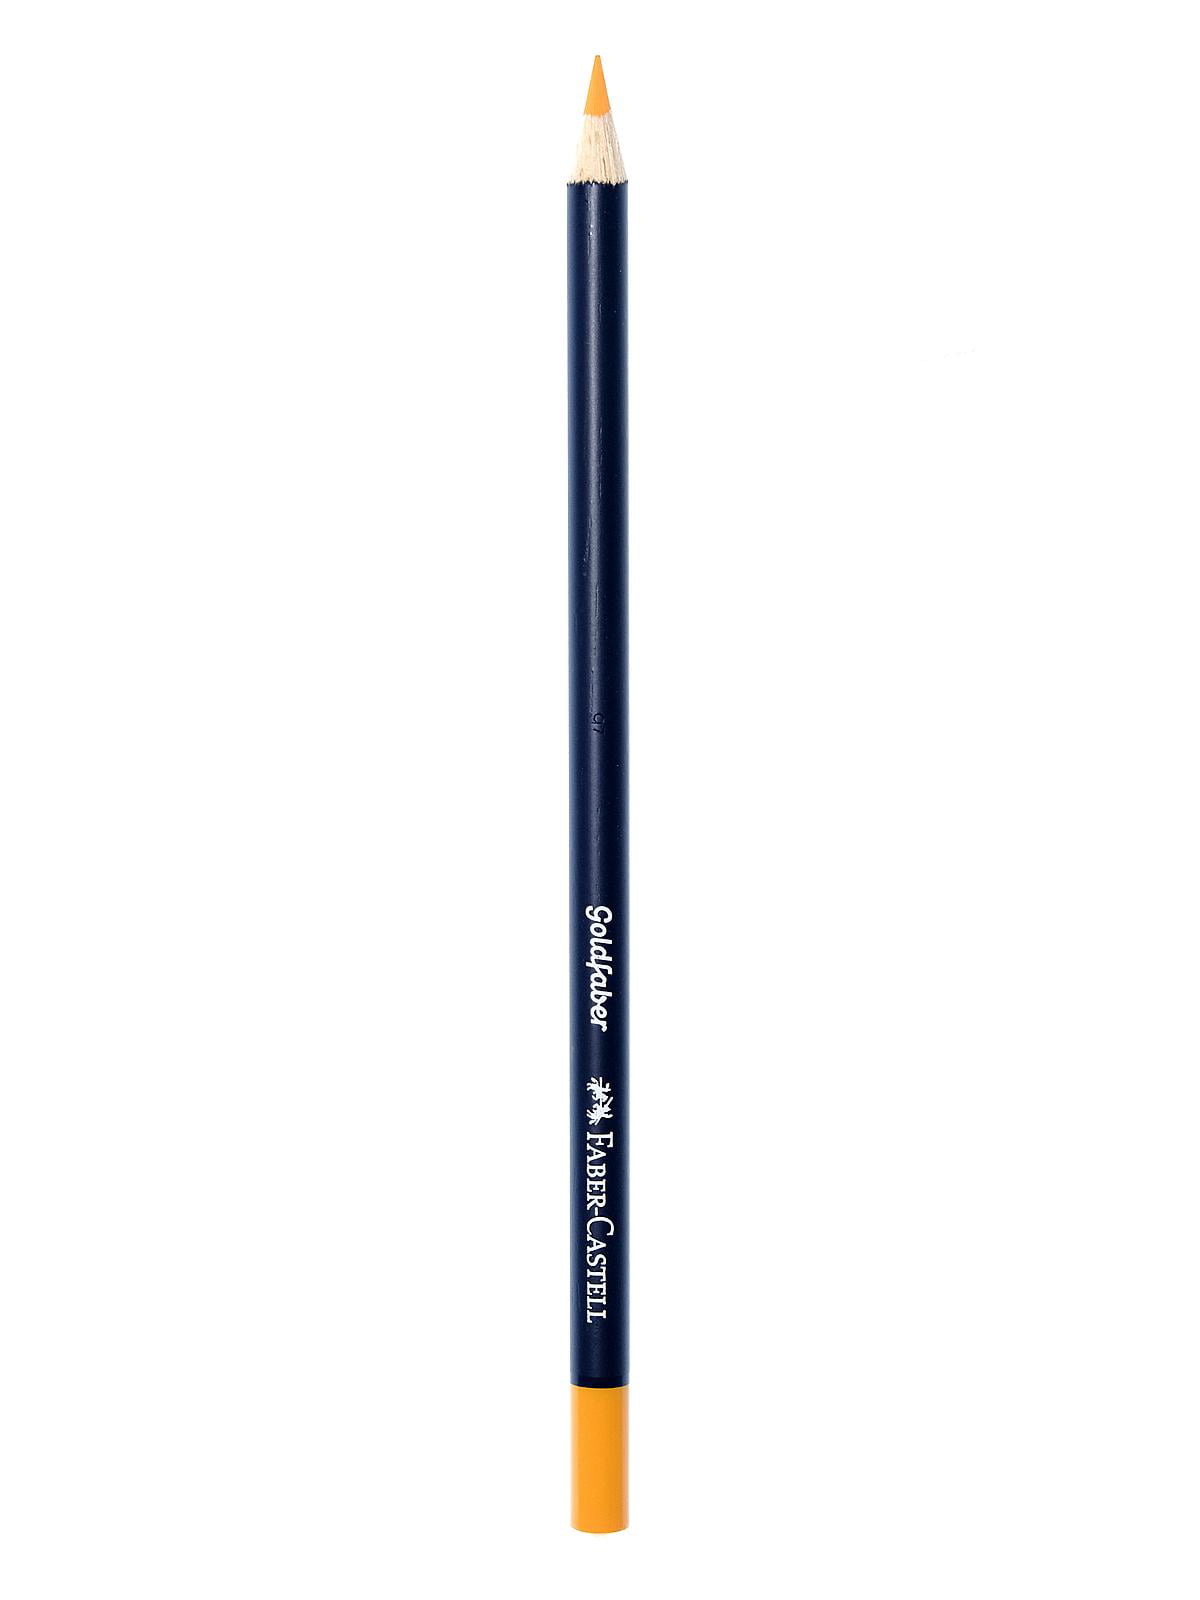 Faber-Castell Polychromos Pencil, No. 250 - Gold